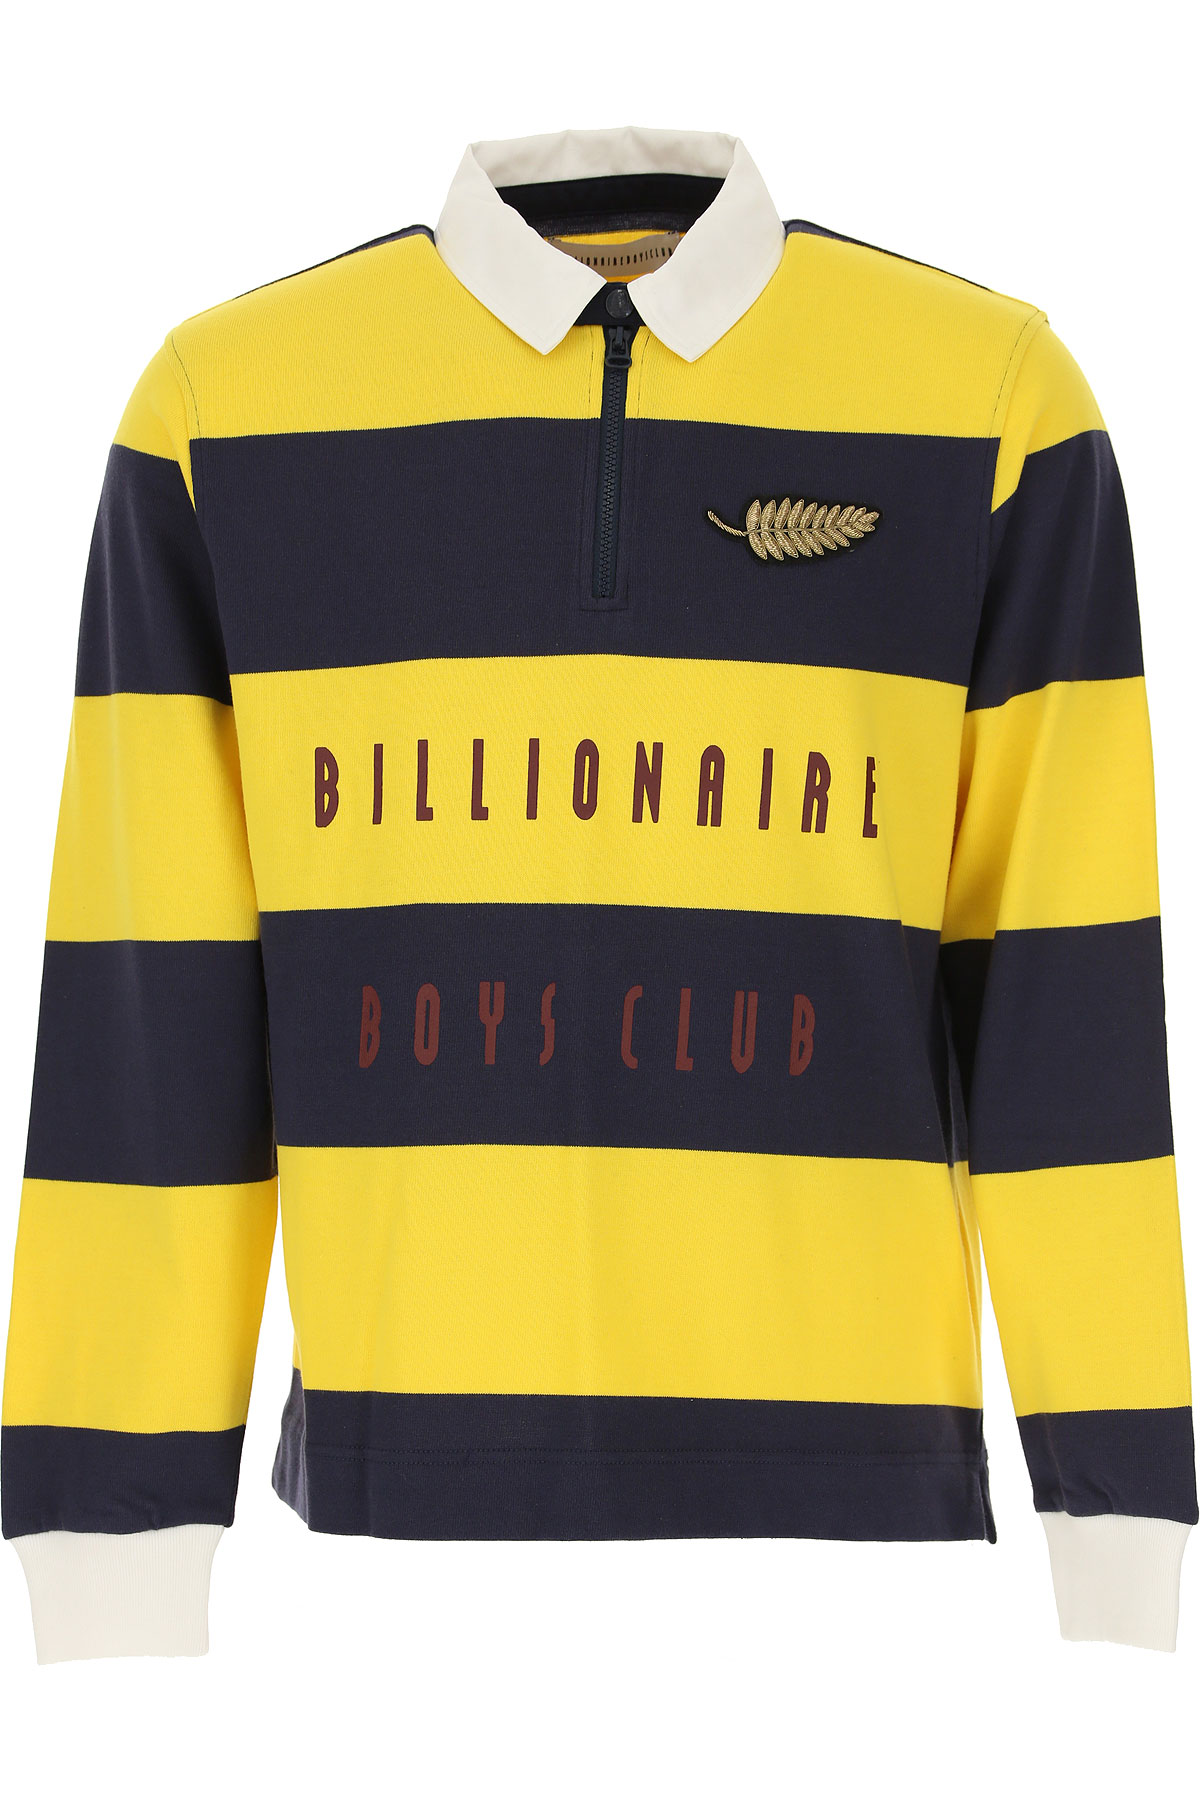 Billionaire Boys Club Polohemd für Herren, Polo-Hemd, Polo-Shirt Günstig im Sale, Gelb, Baumwolle, 2017, L M S